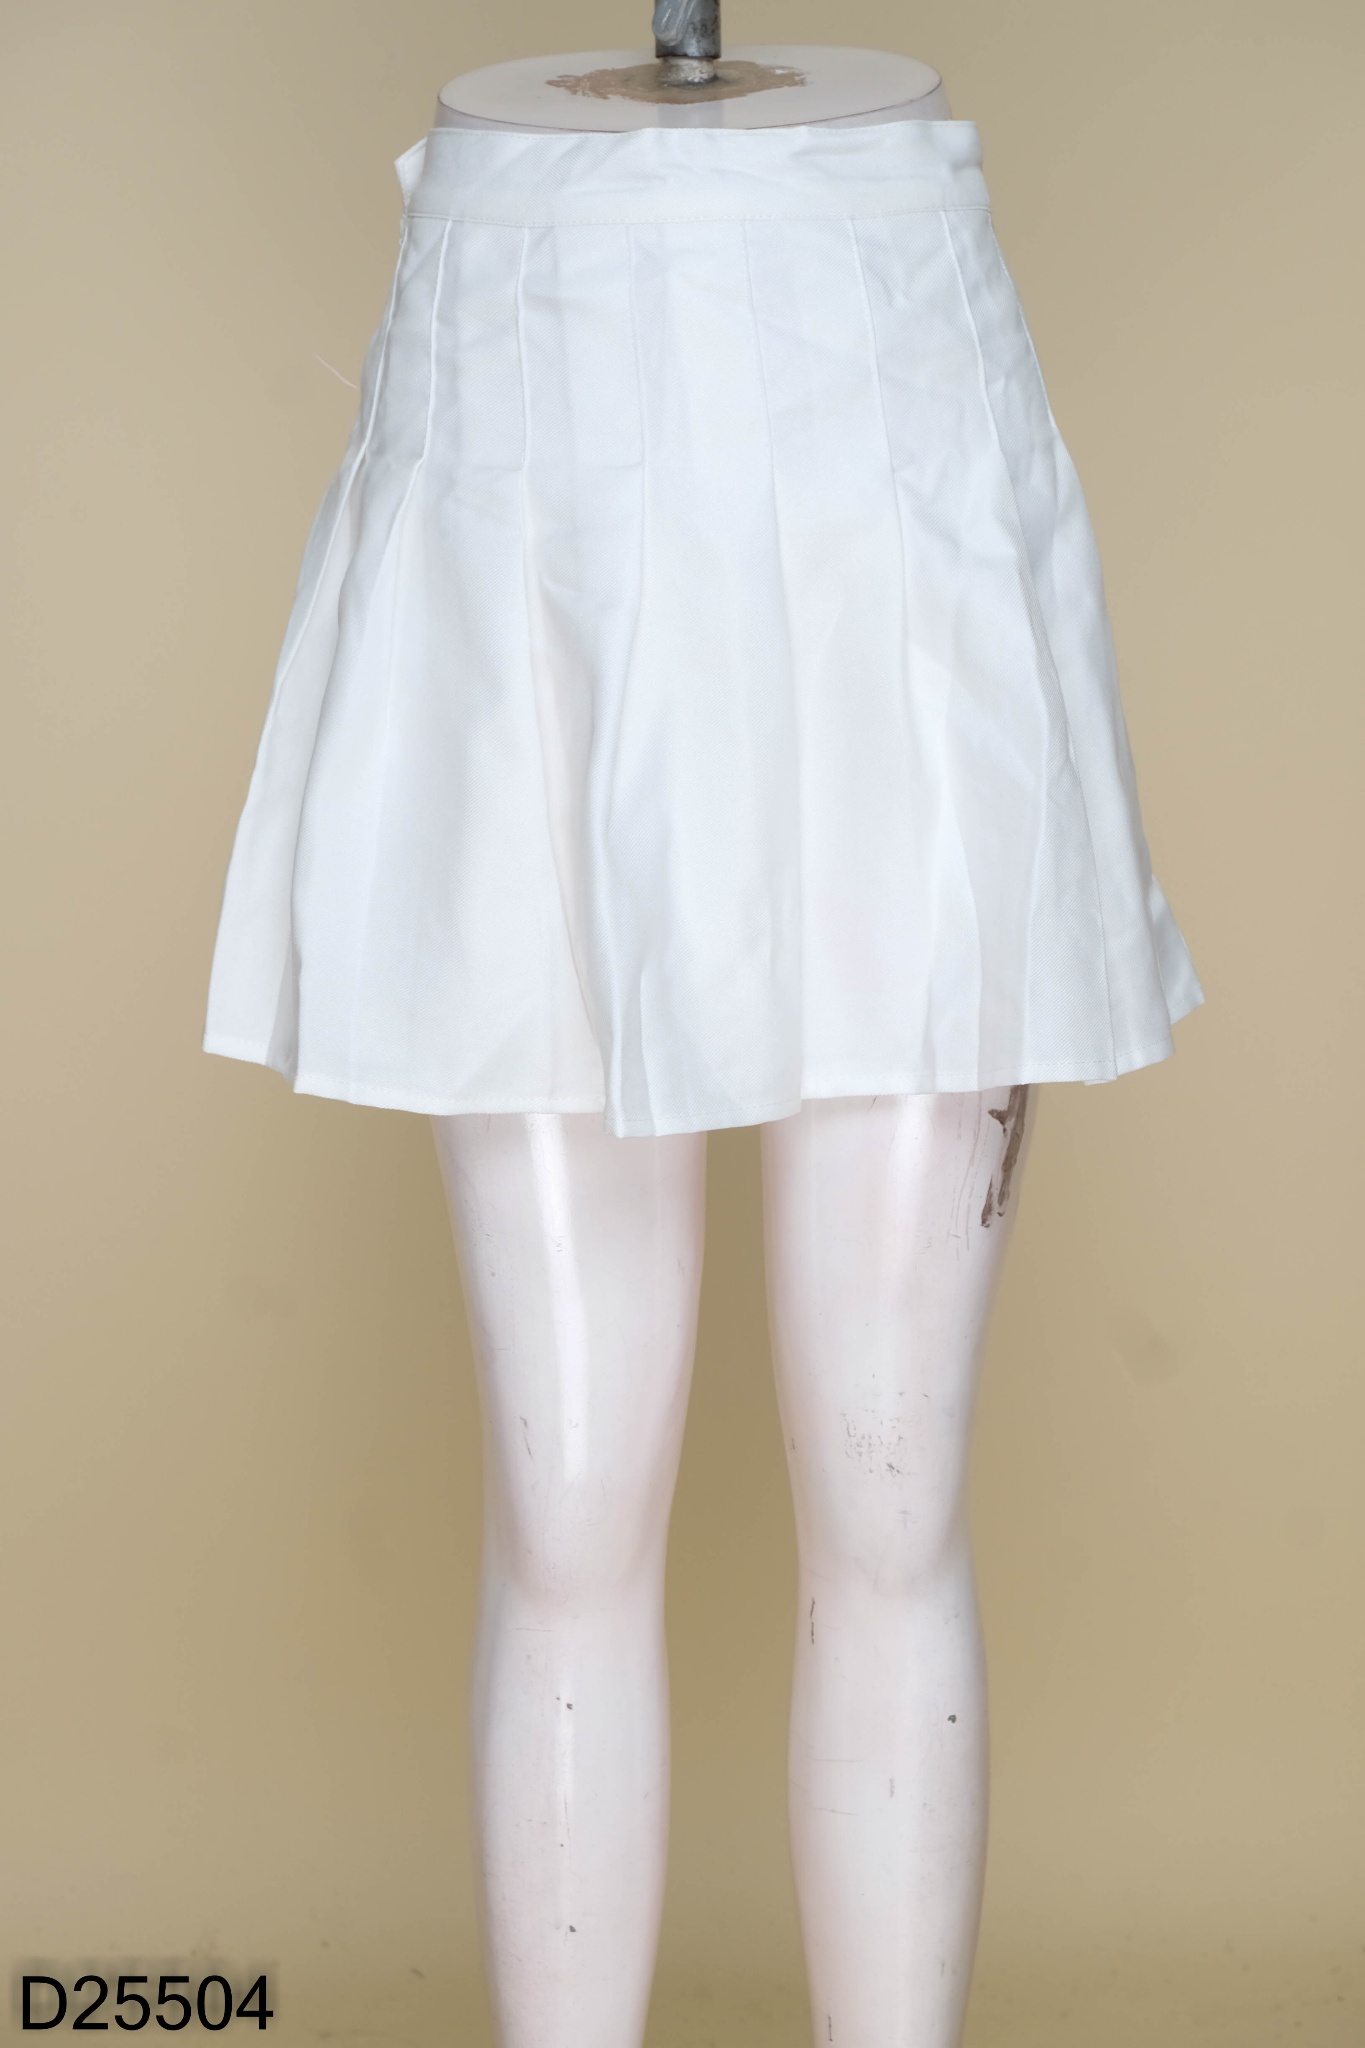 Bí kíp” phối đồ với chân váy xếp ly dài cực đẹp và trendy